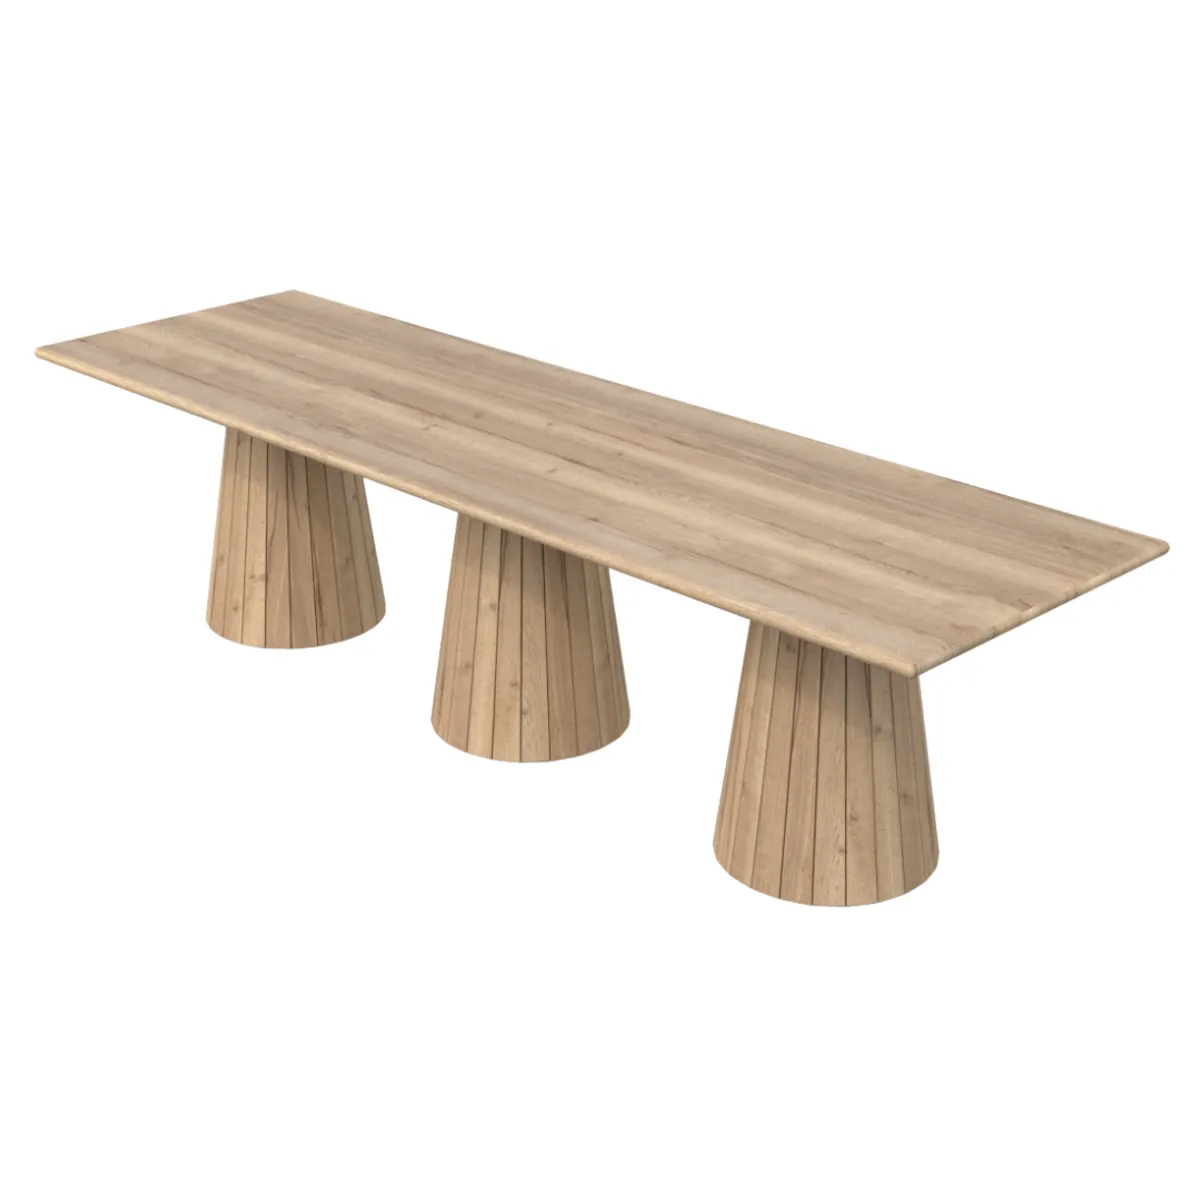 Bespoke metropole wooden table 4